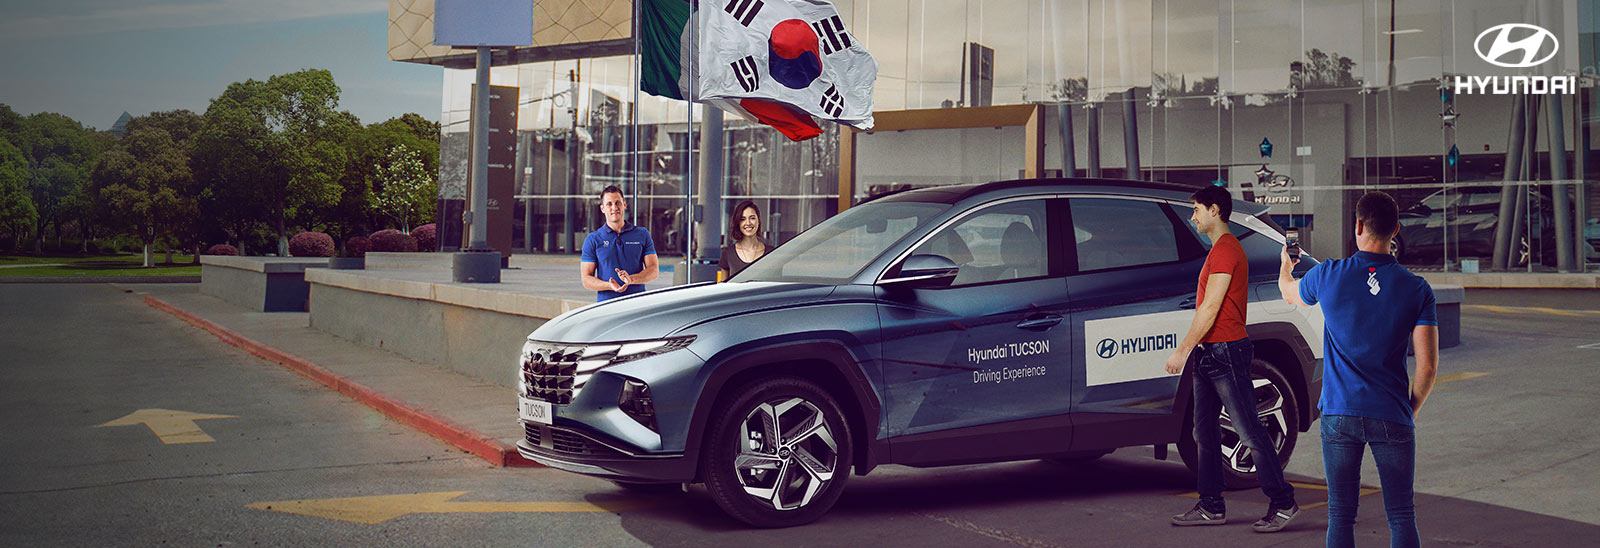 Hyundai celebra 10 años en México llevándote a Corea del Sur